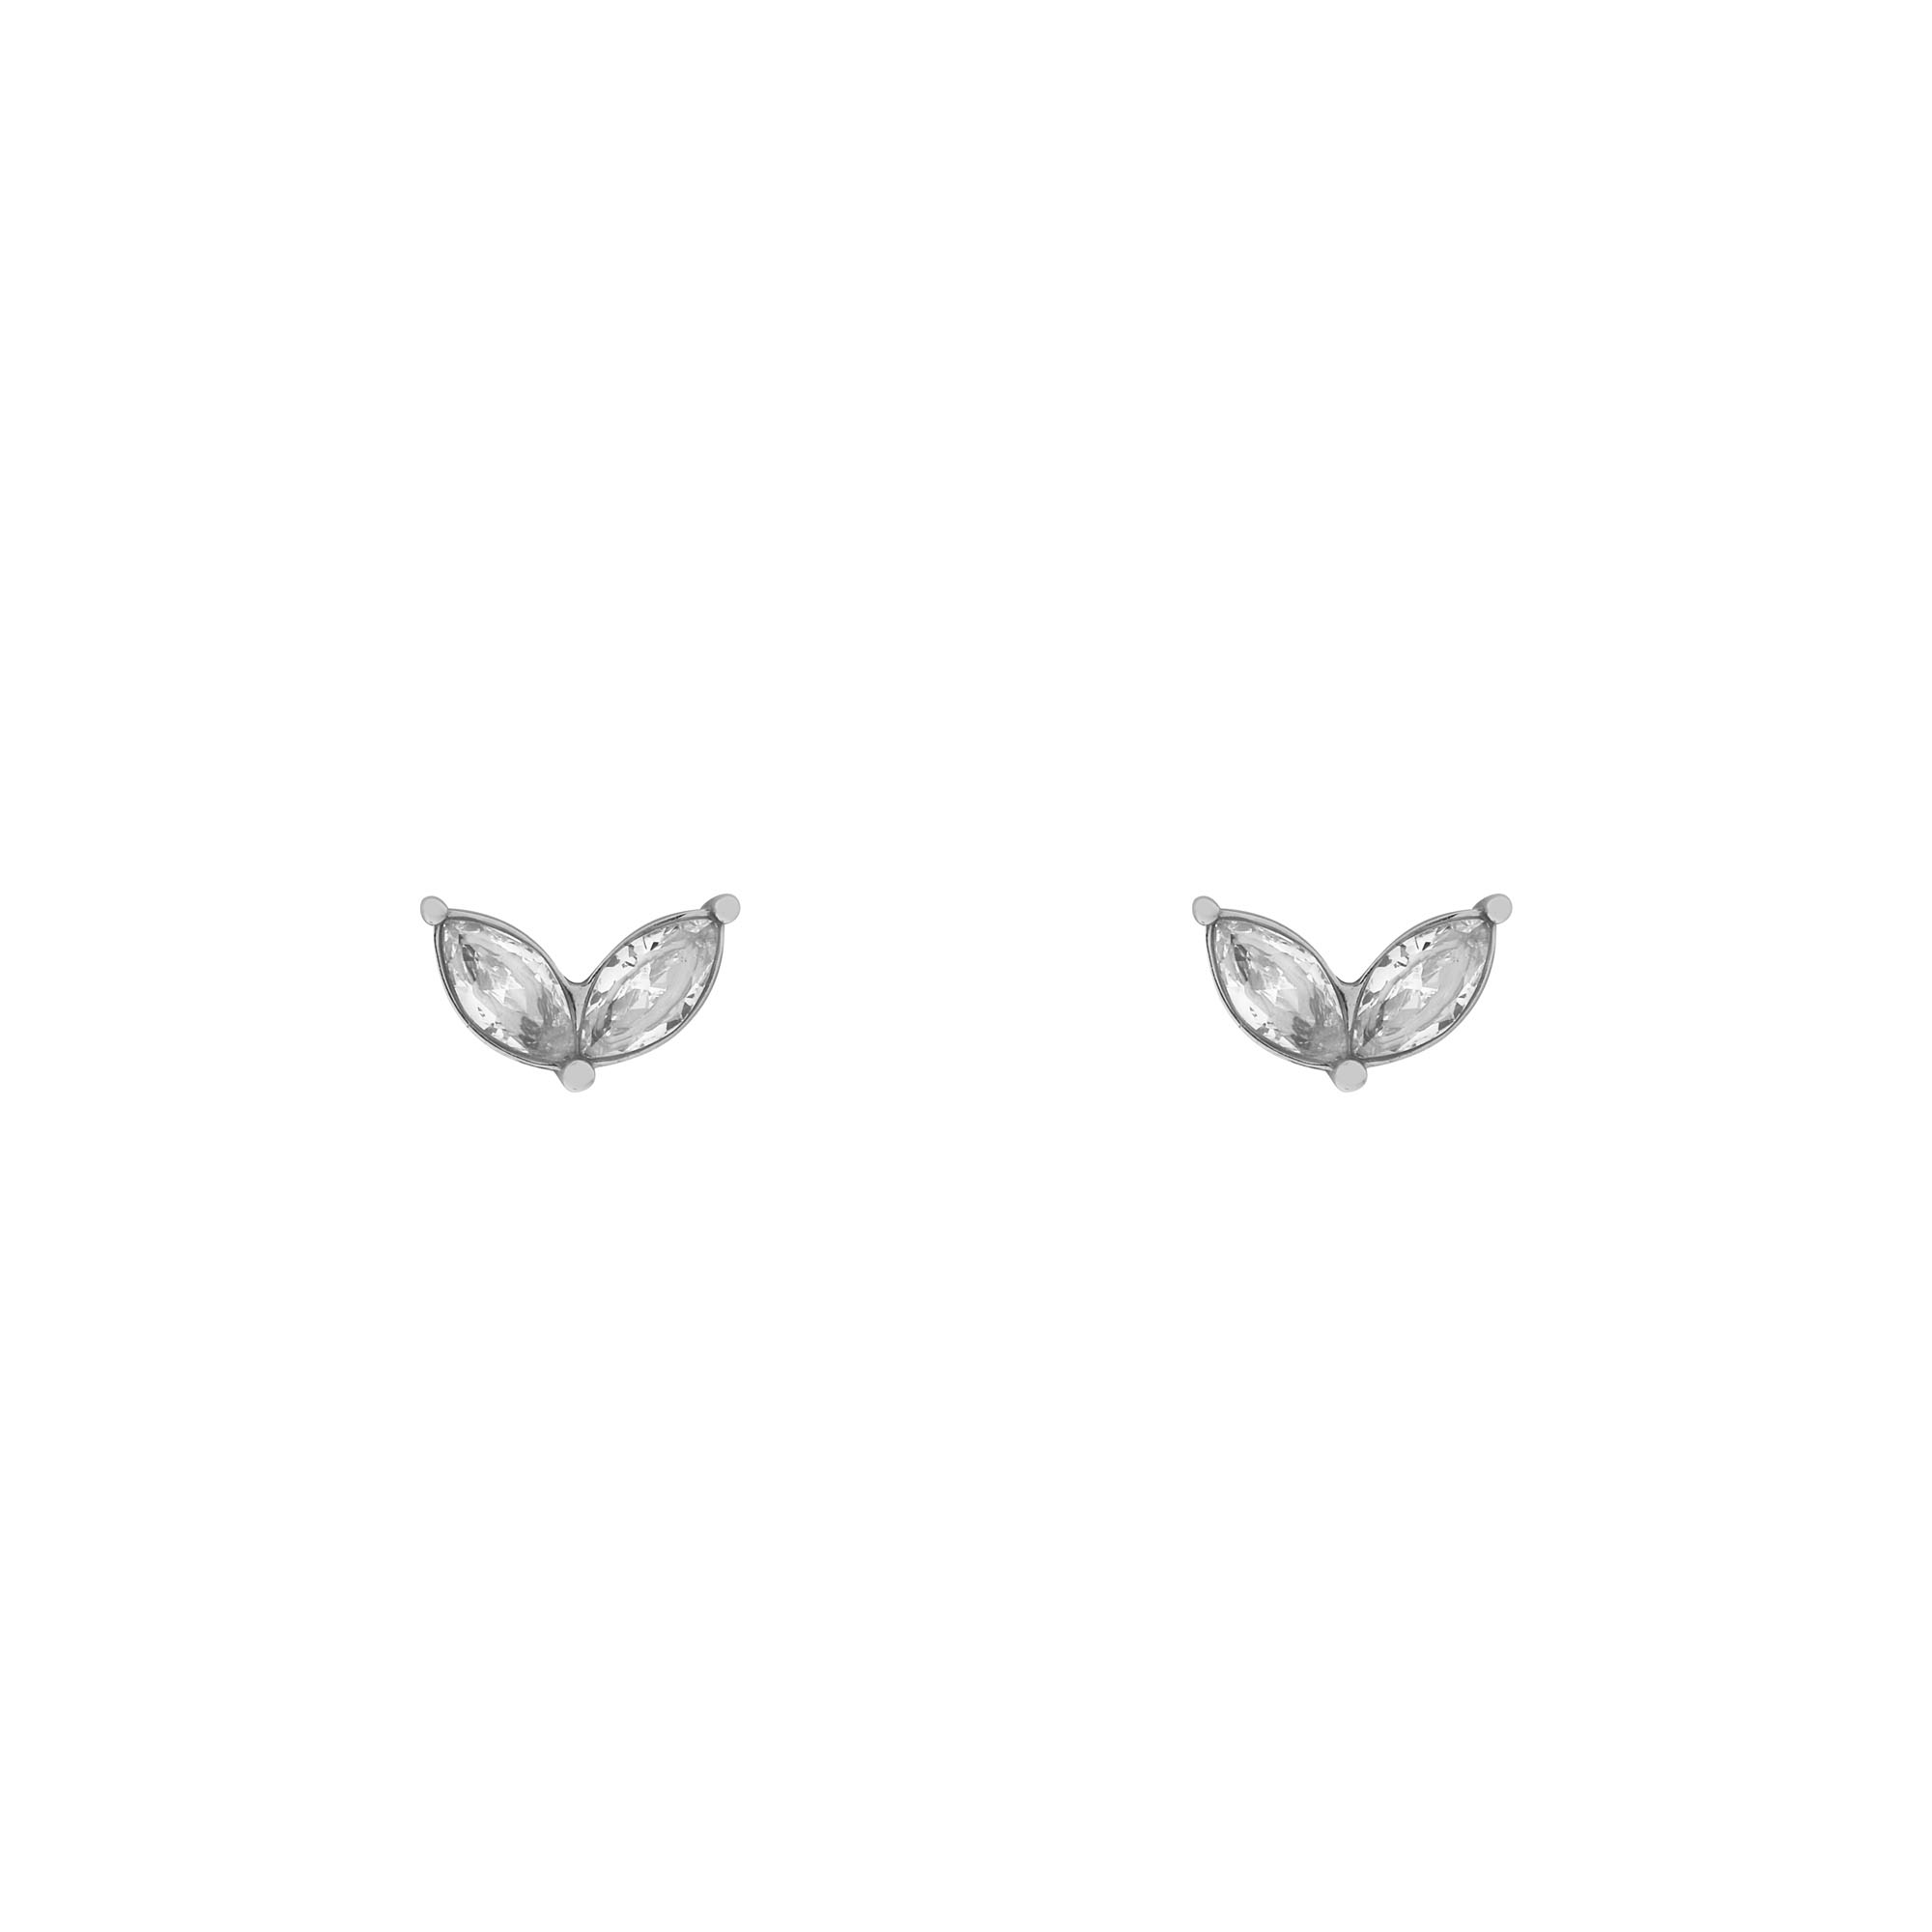 Stud earrings stones wing silver